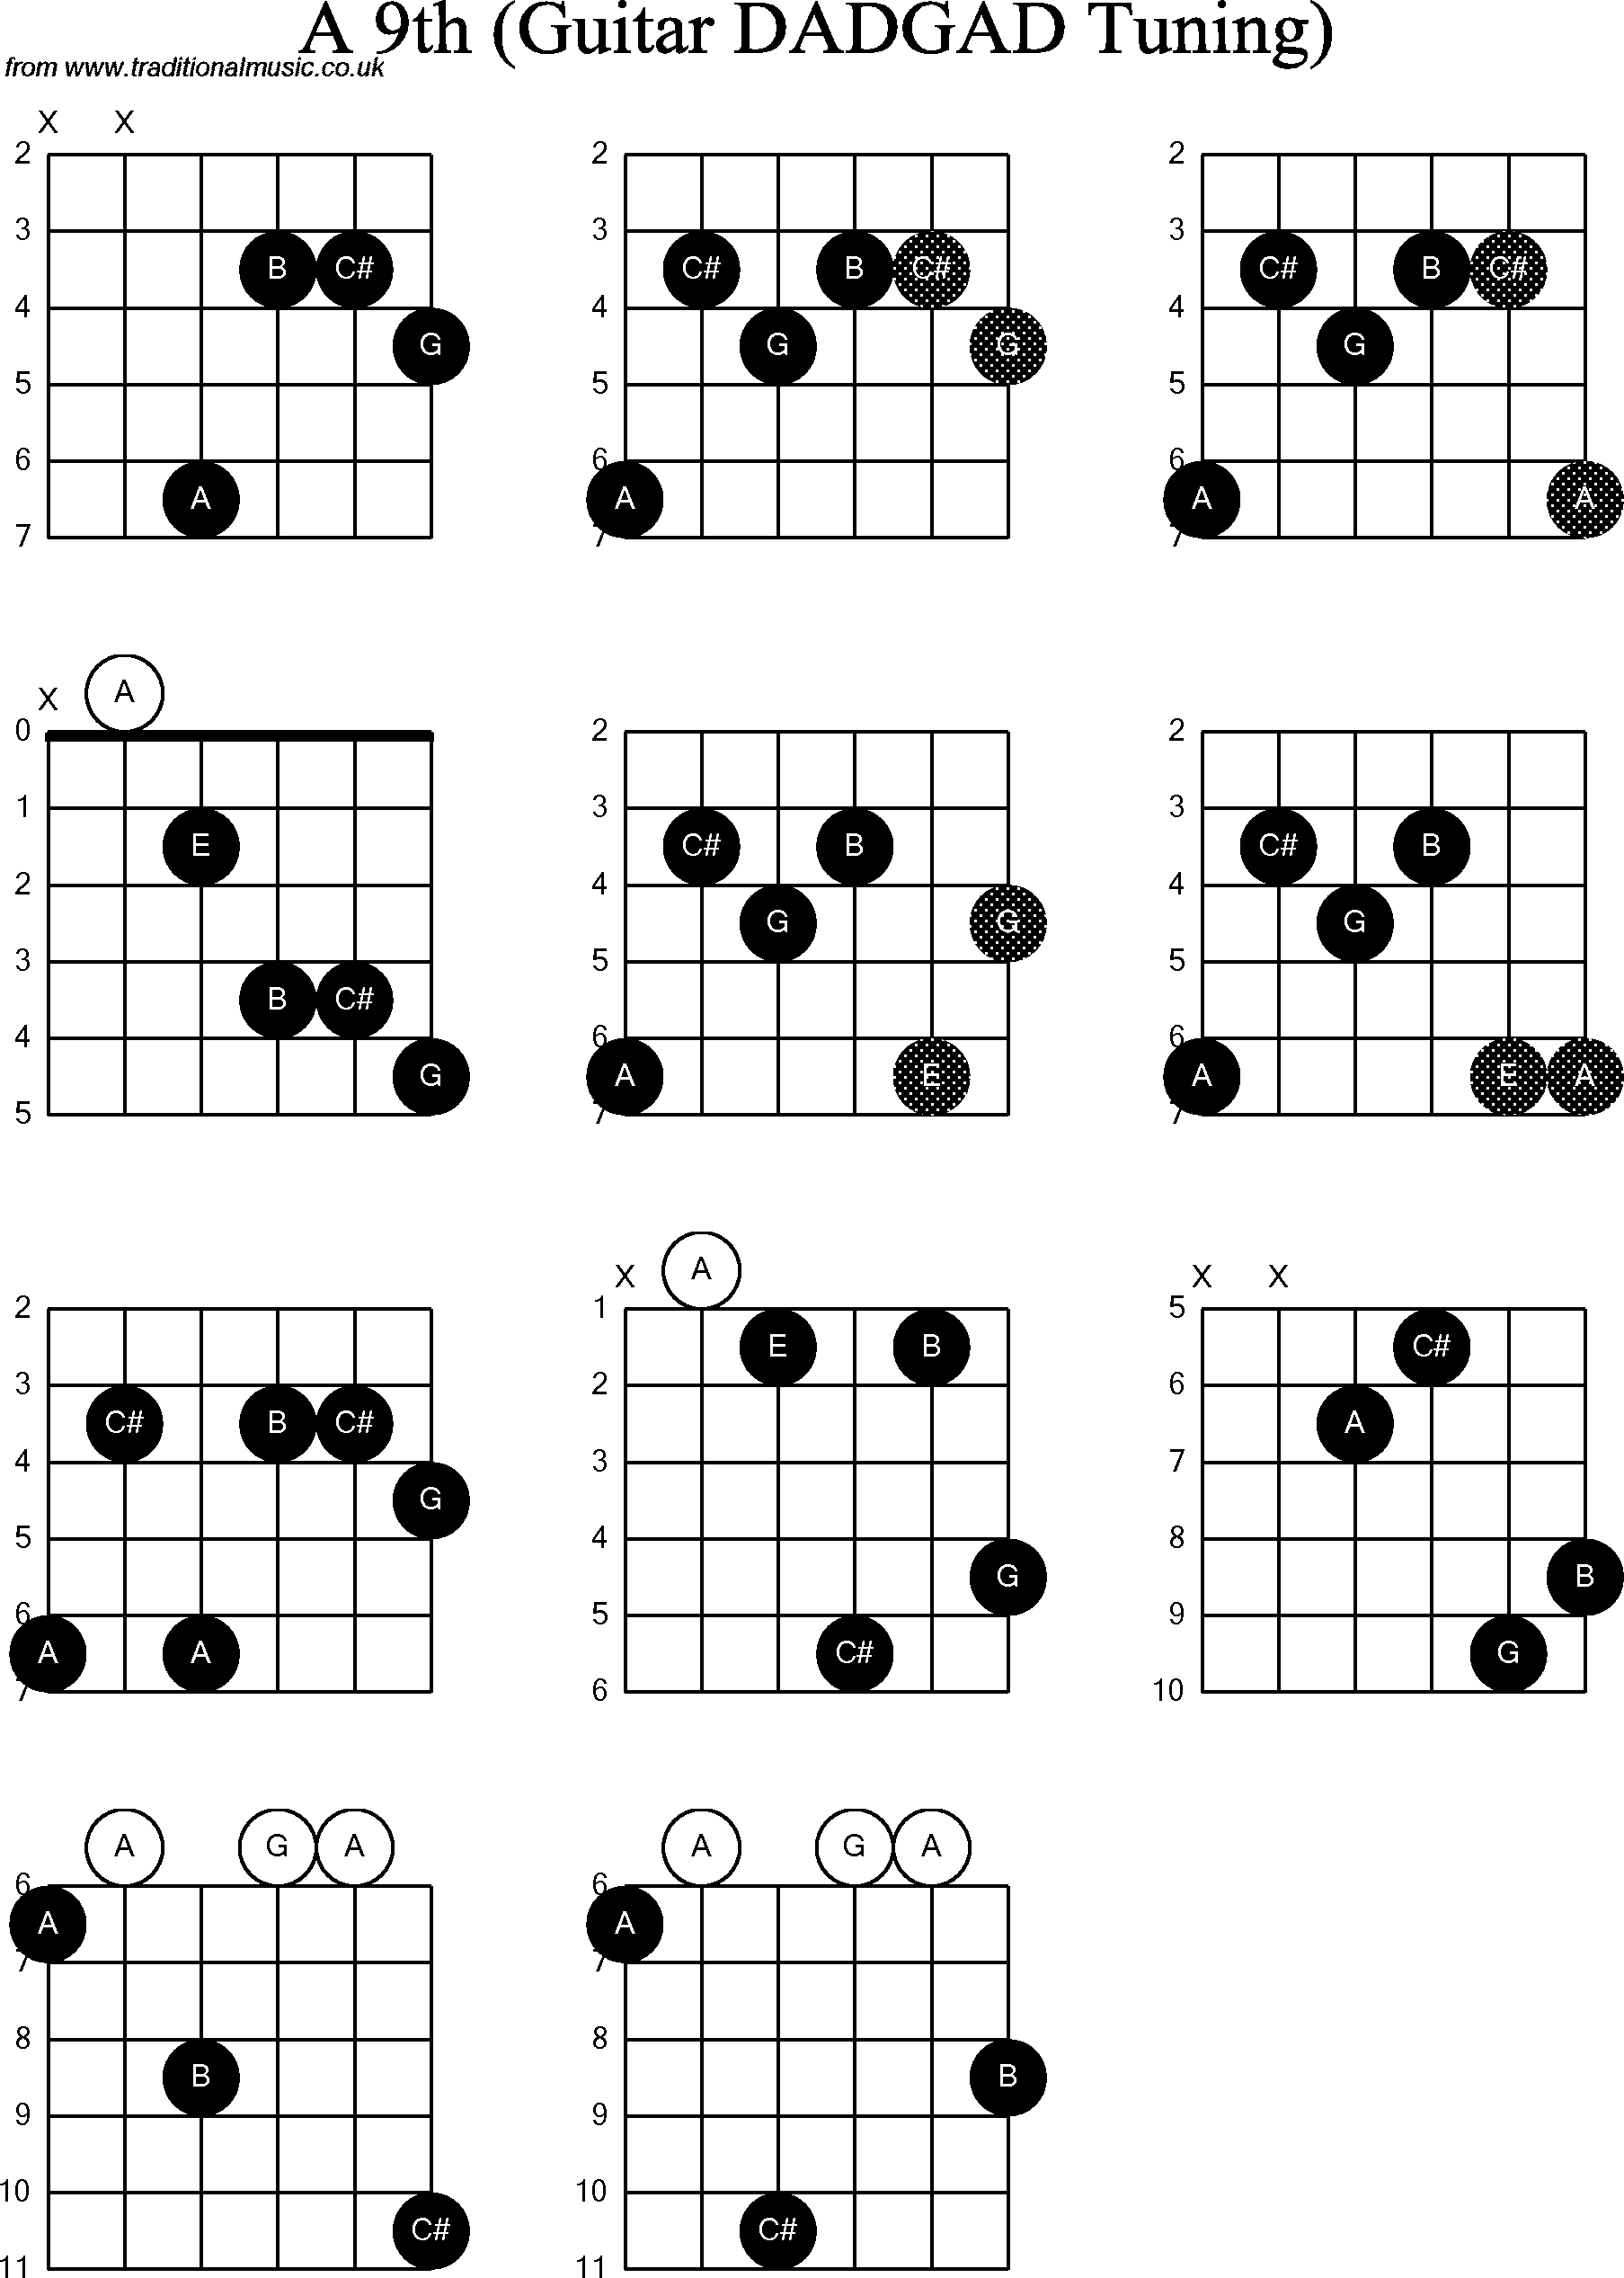 Chord Diagrams for D Modal Guitar(DADGAD), A9th